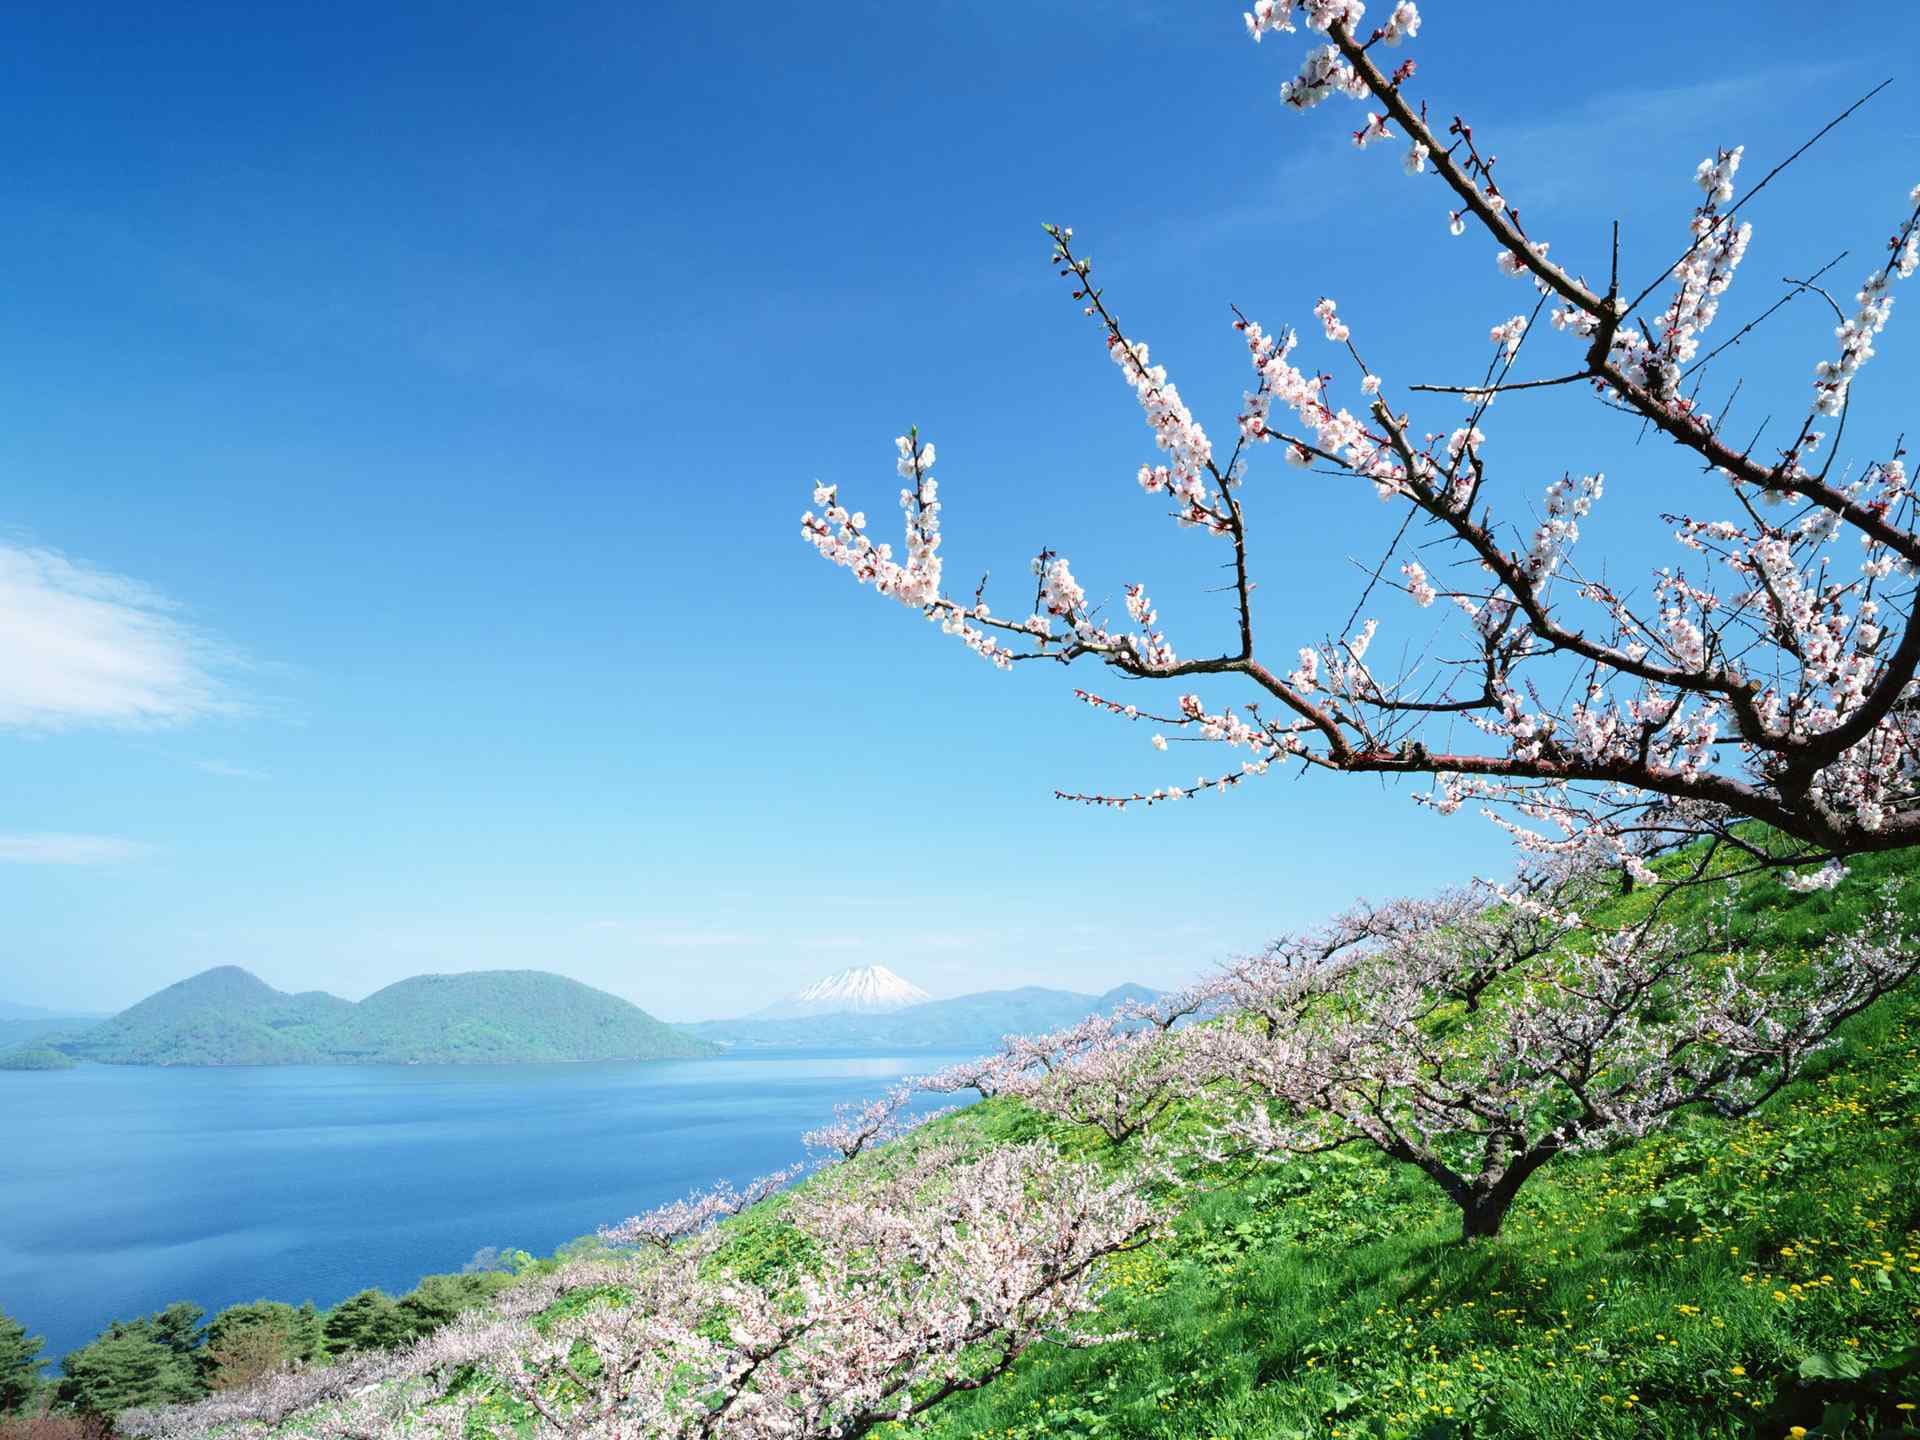 美丽清新的北海道风景摄影壁纸图片